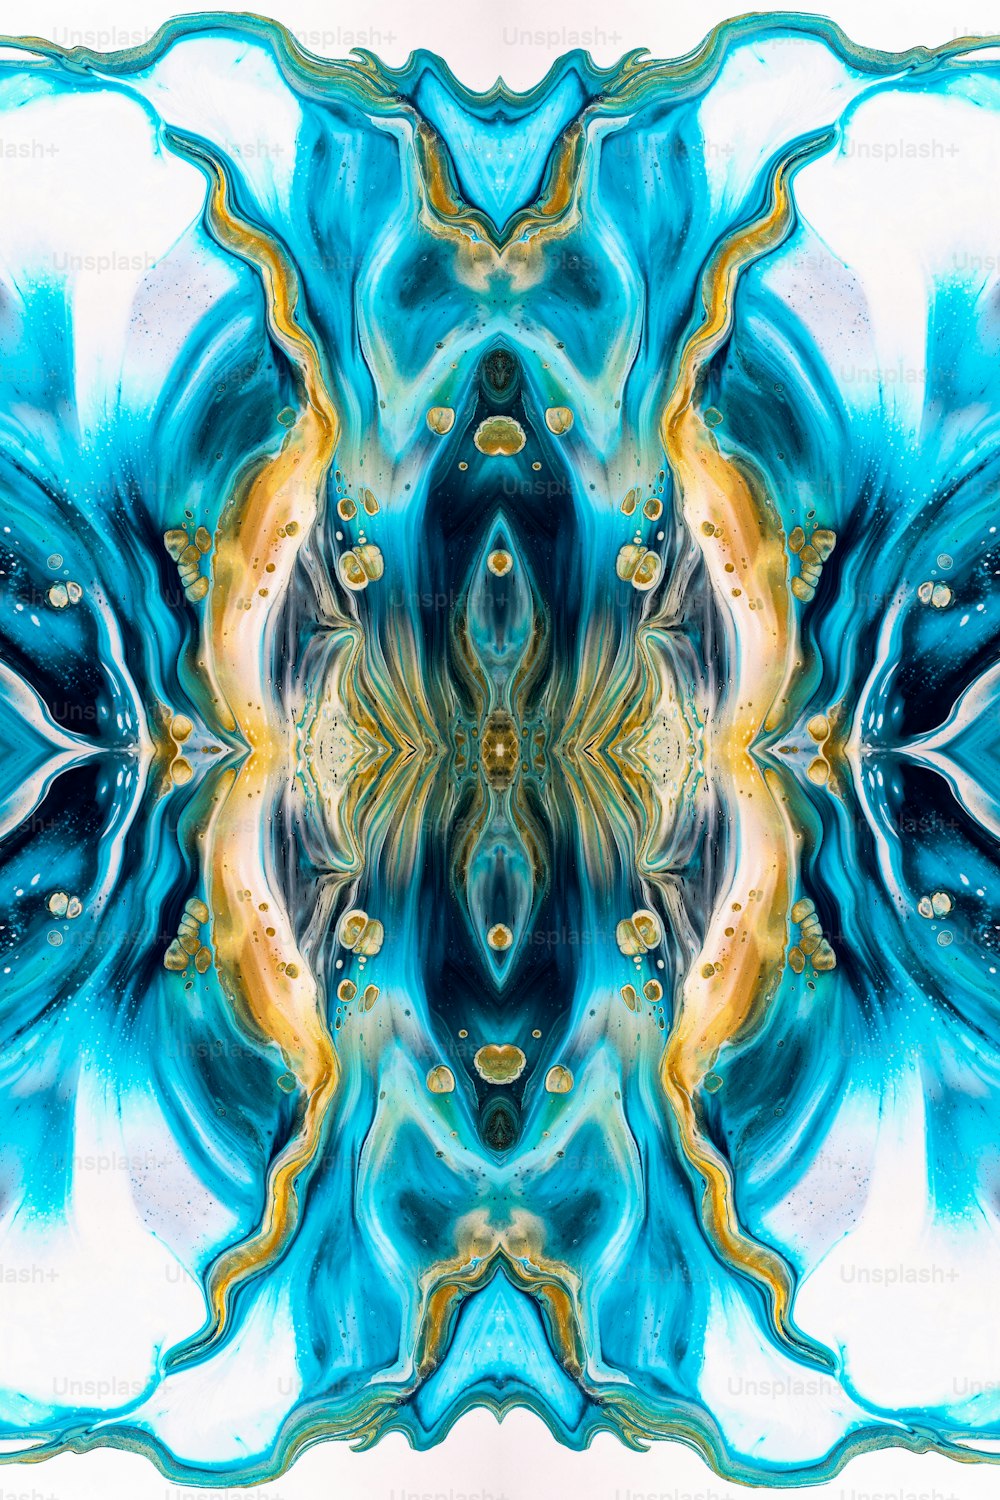 Une image abstraite d’une fleur bleue et jaune